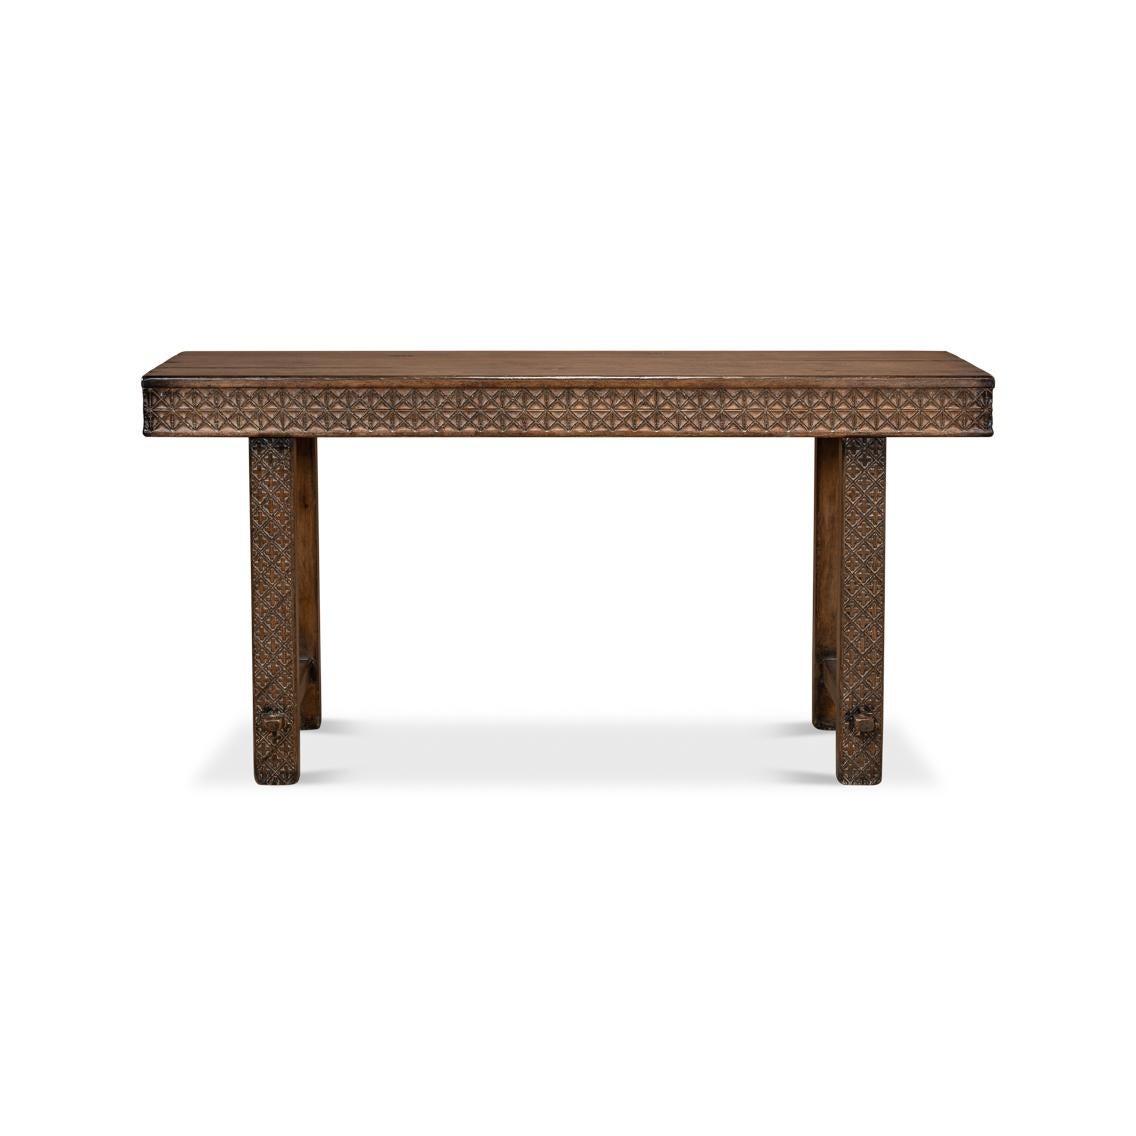 Ses sculptures géométriques complexes évoquent l'artisanat antique. Fabriquée en bois de pin vieilli, cette table console présente une structure robuste qui promet de résister à l'épreuve du temps en termes de durabilité et de style.

Parfaite pour